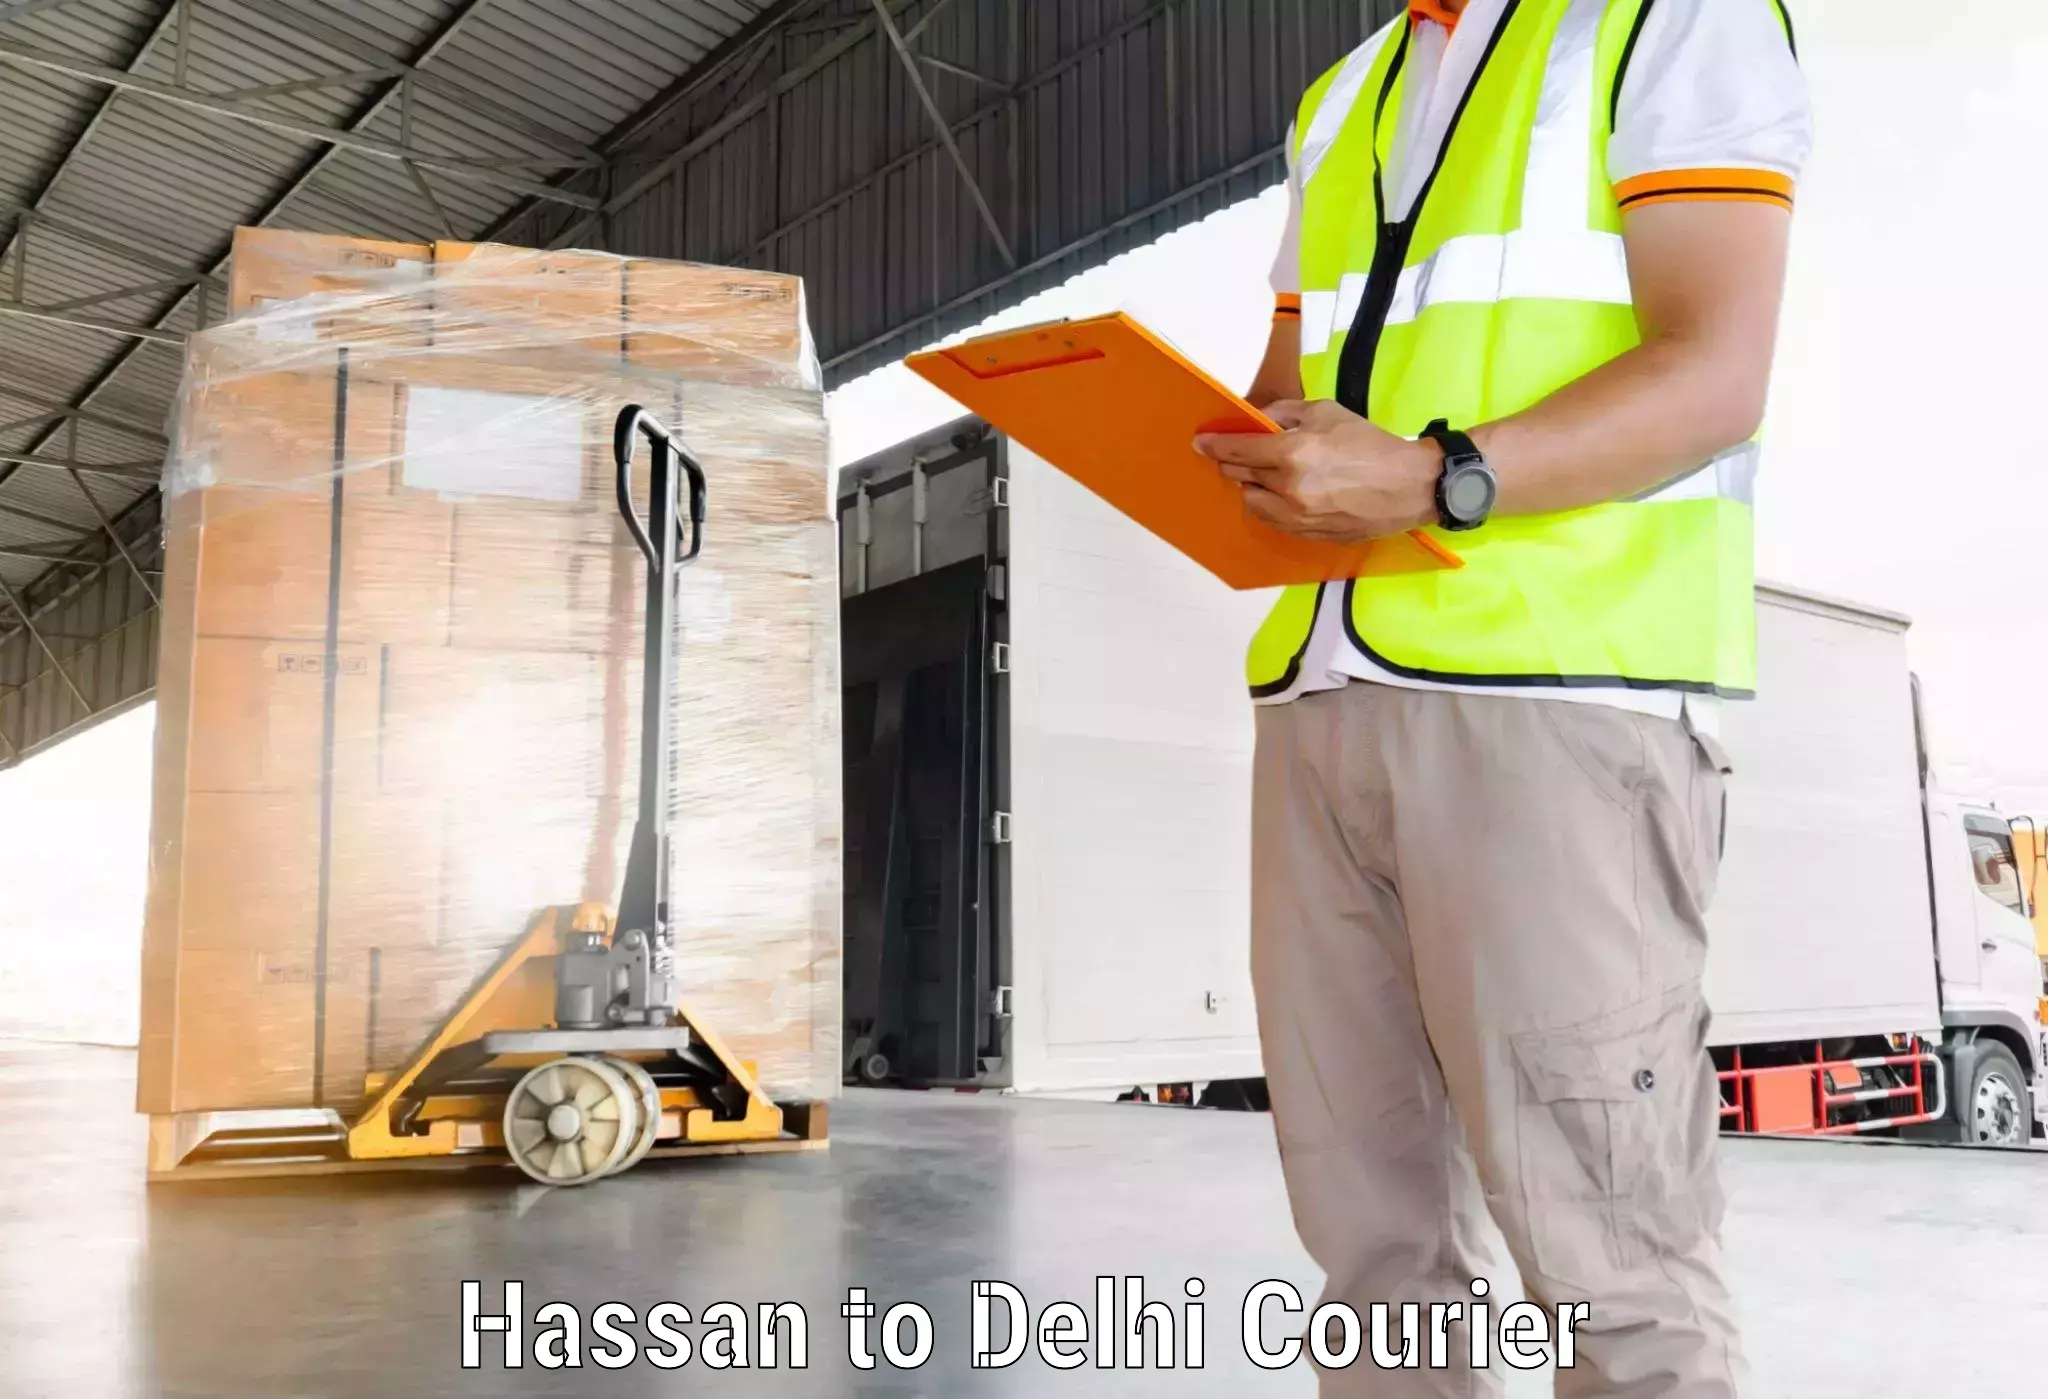 Bulk courier orders Hassan to Sarojini Nagar